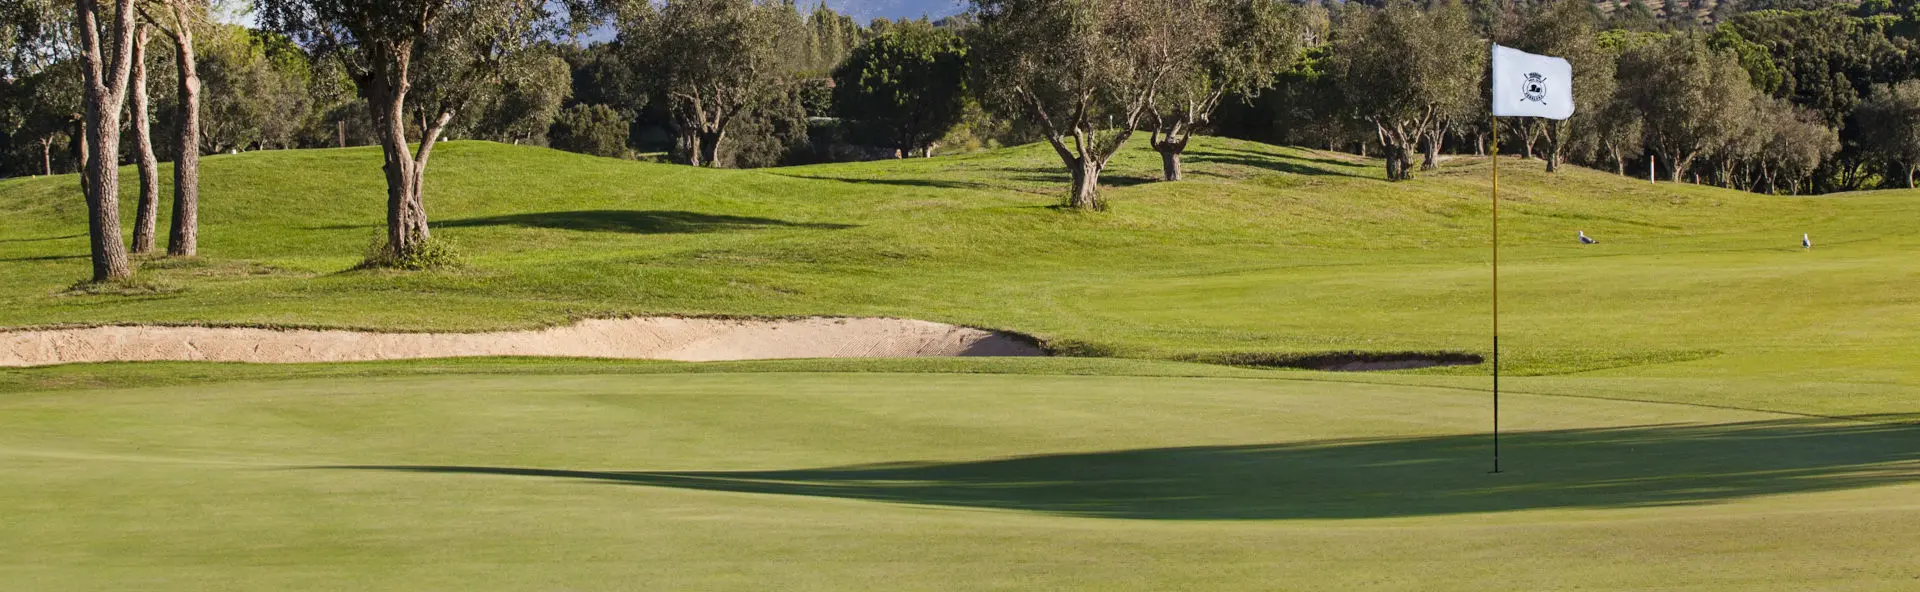 Spain golf courses - Peralada Golf Course - Photo 2